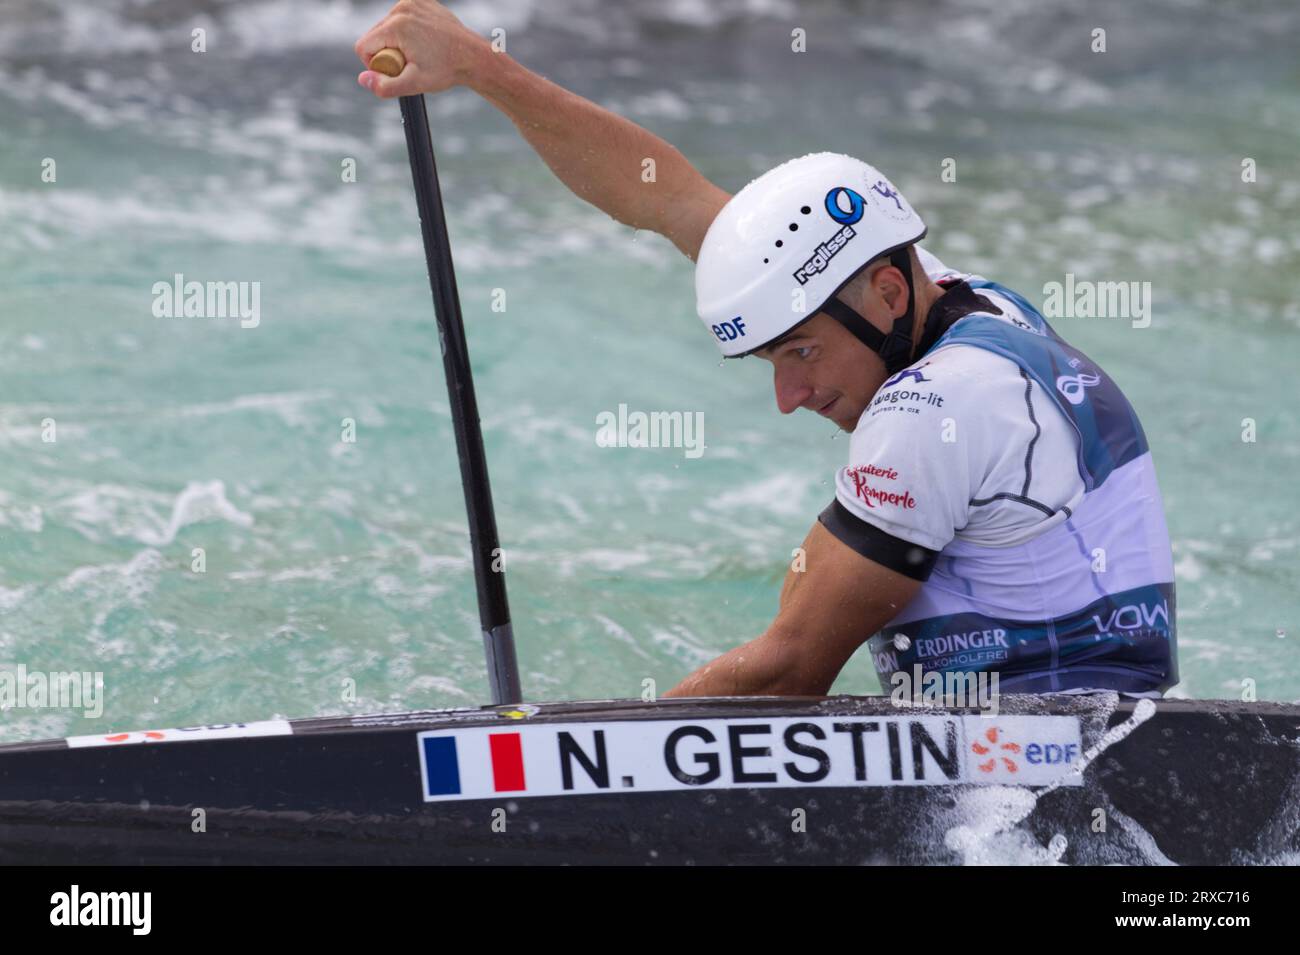 Nicolas Gestin, de France, participe au C1 masculin aux Championnats du monde de slalom de canoë ICF qui se déroulent au Lee Valley White Water Centre. Banque D'Images